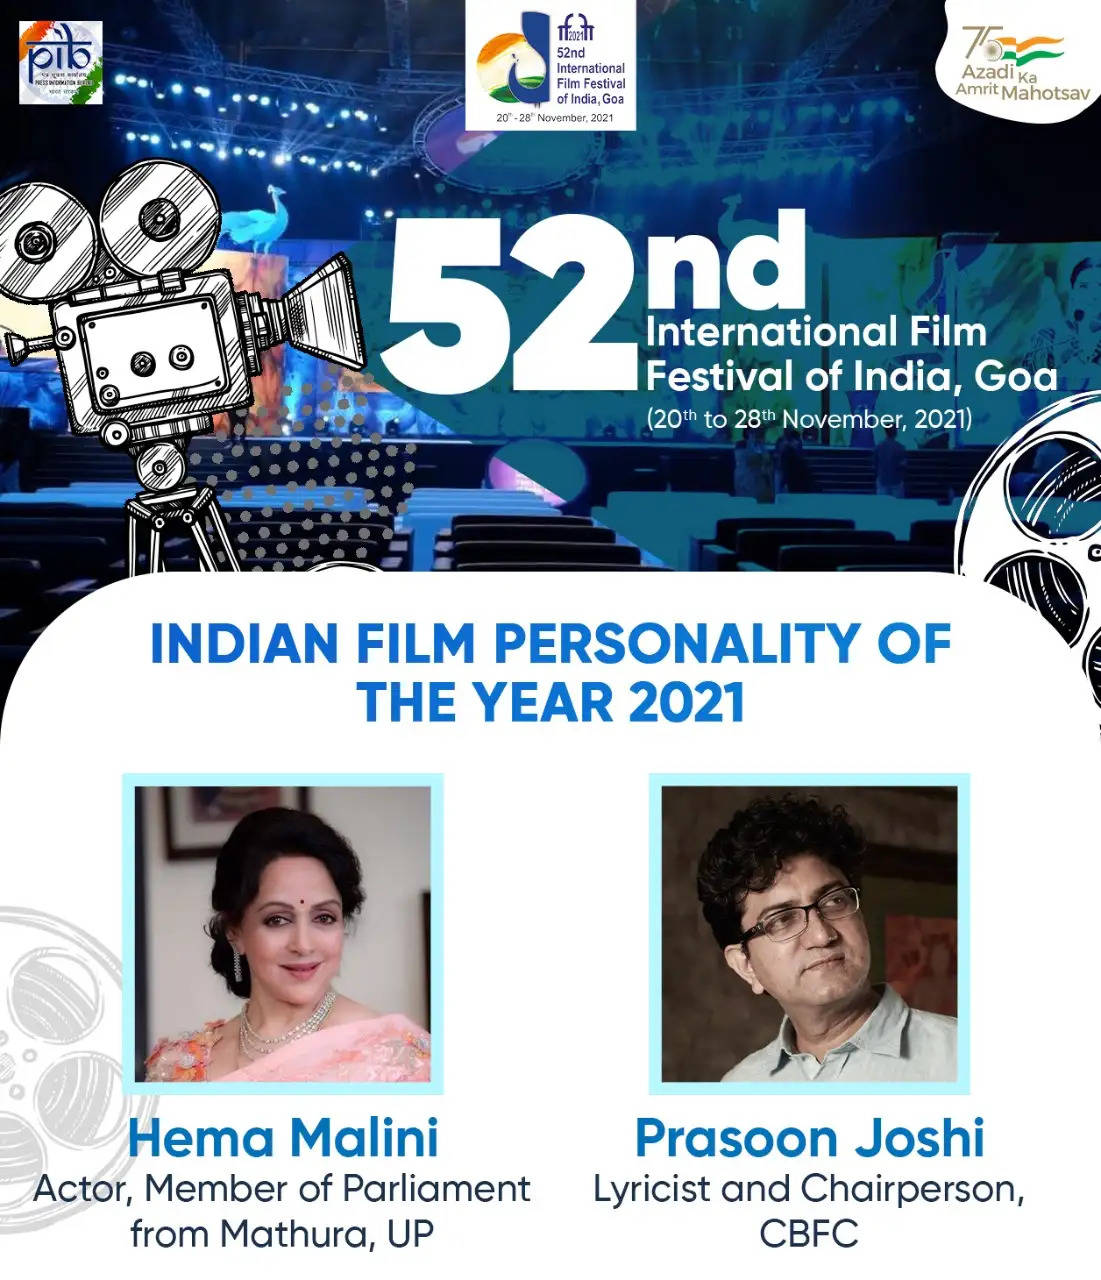 52-வது இந்திய சர்வதேச திரைப்பட விழா: ஹேமாமாலினி மற்றும் பிரசூன் ஜோஷிக்கு இந்திய திரை ஆளுமை விருது